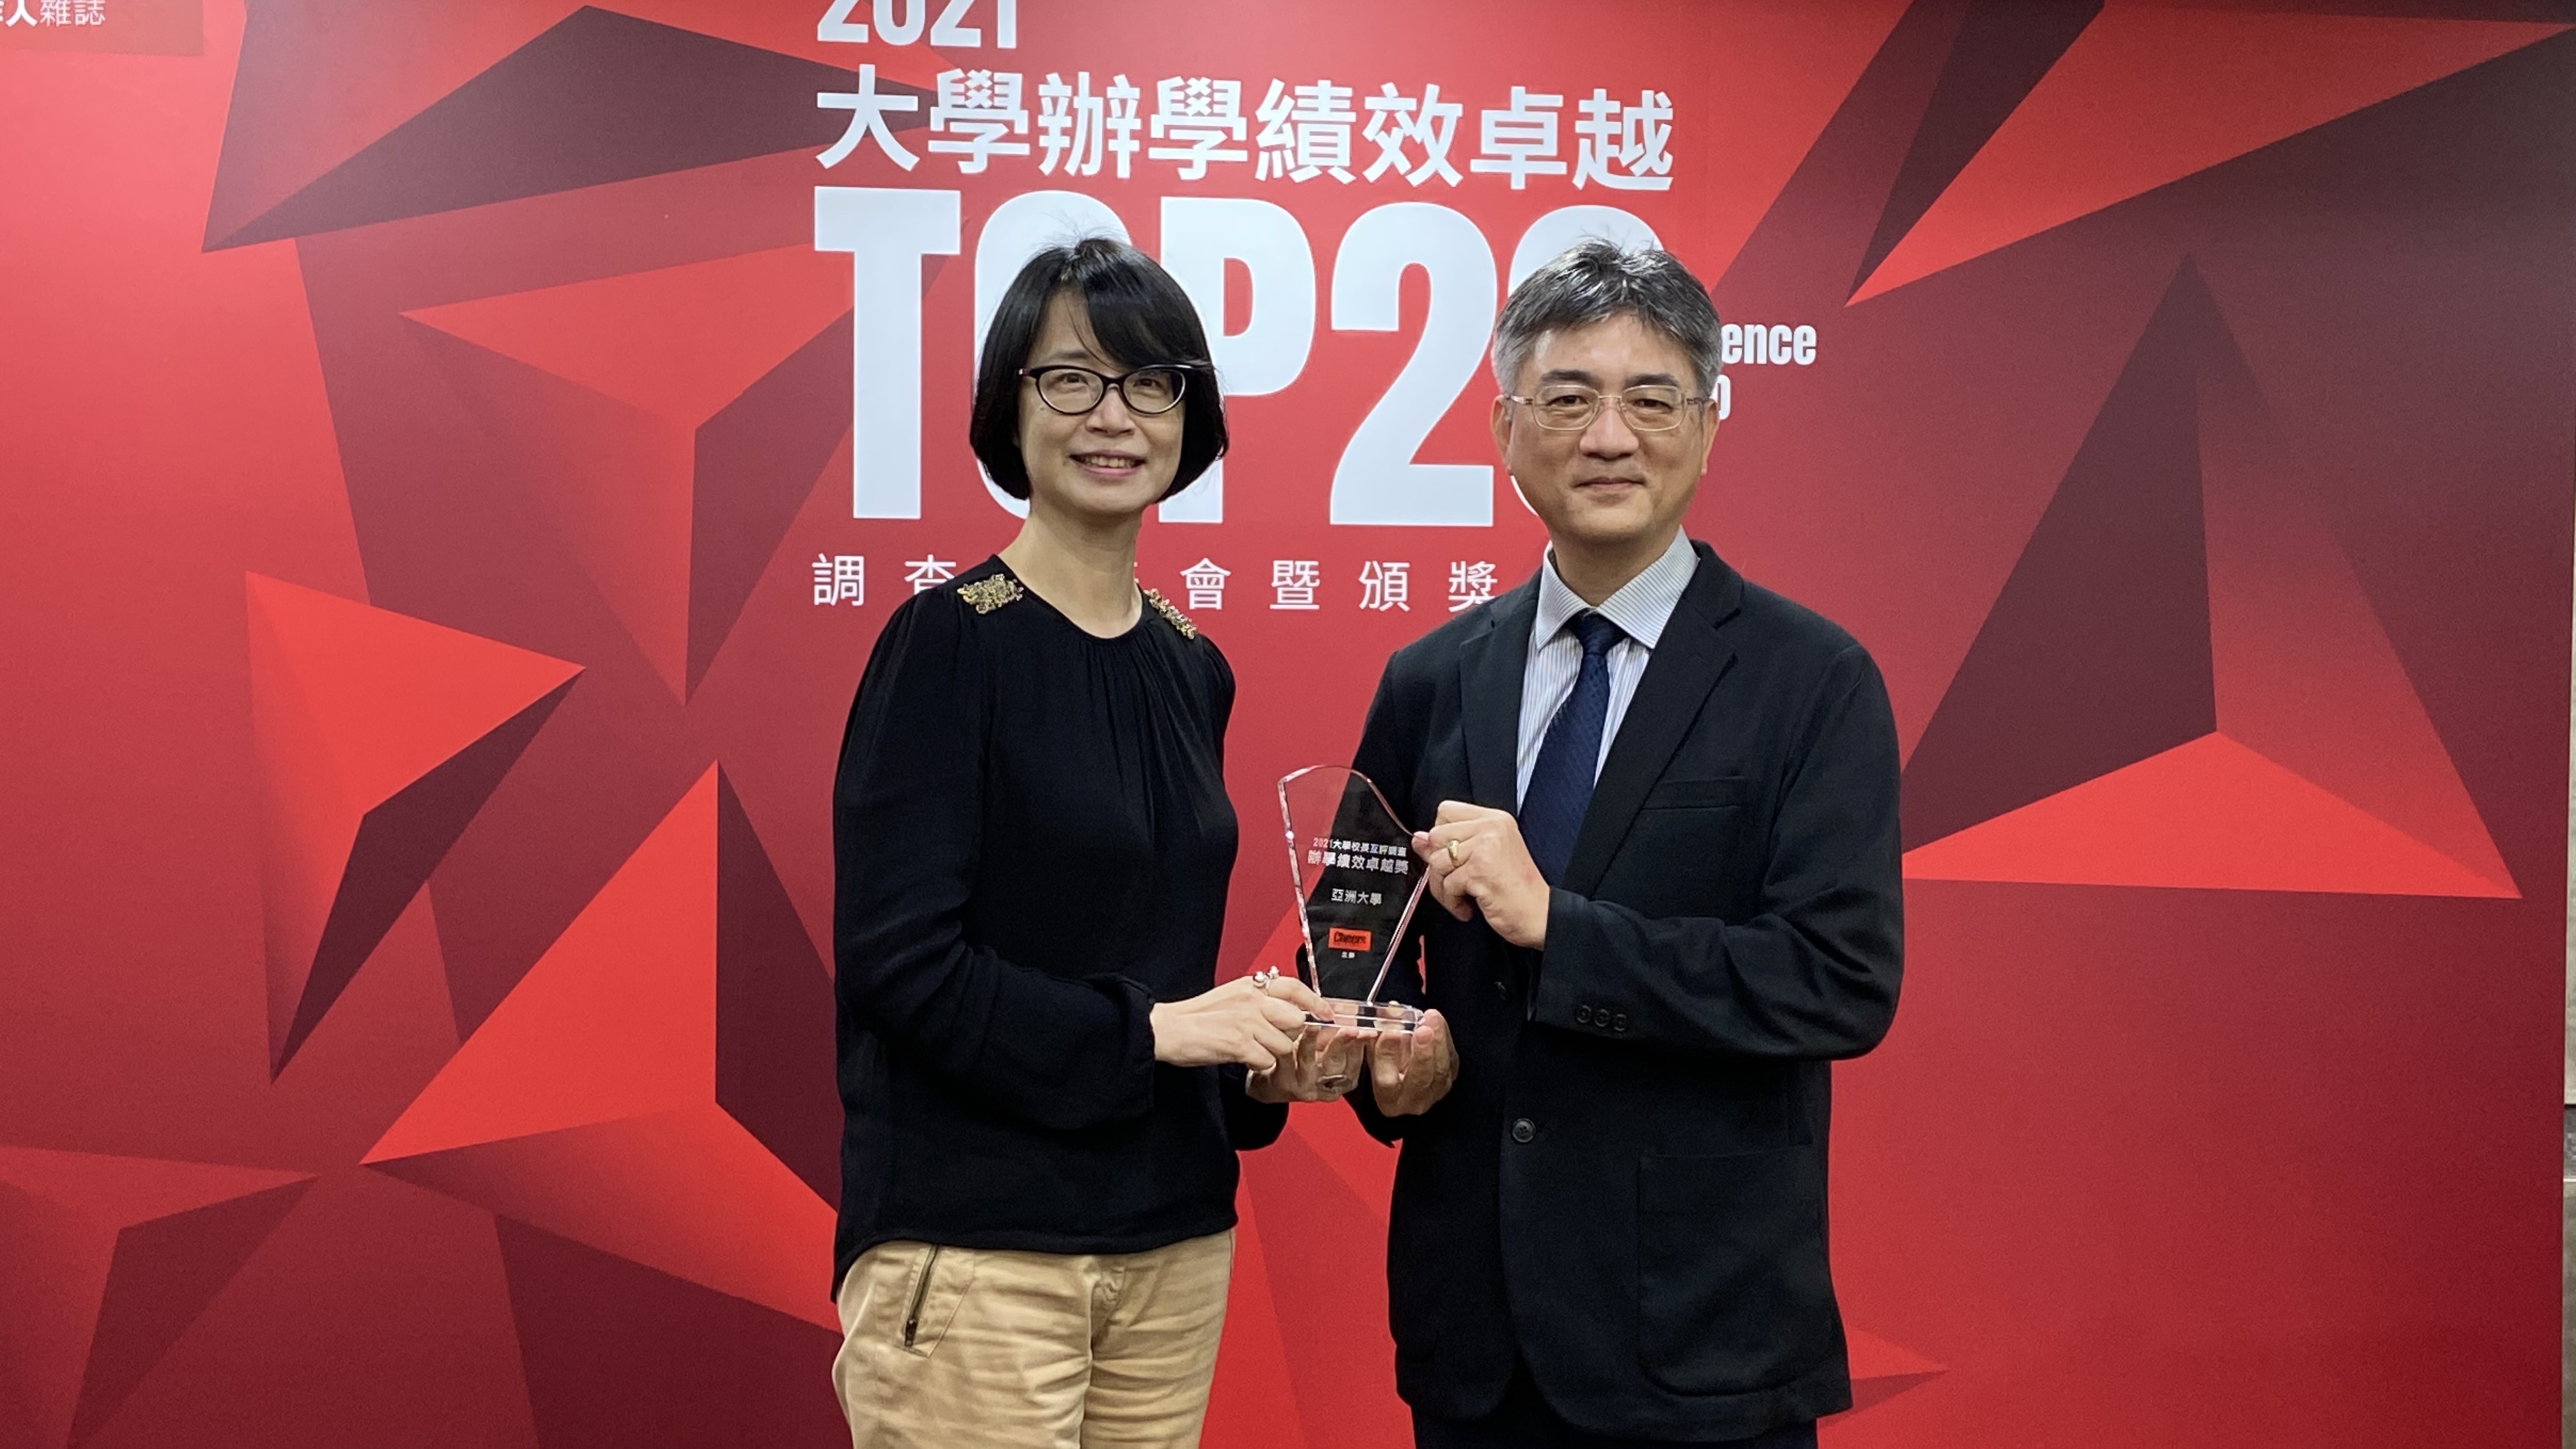 亞大副校長陳大正（右）代表亞大，接受Cheers雜誌主辦，大學辦學績效TOP20頒獎。